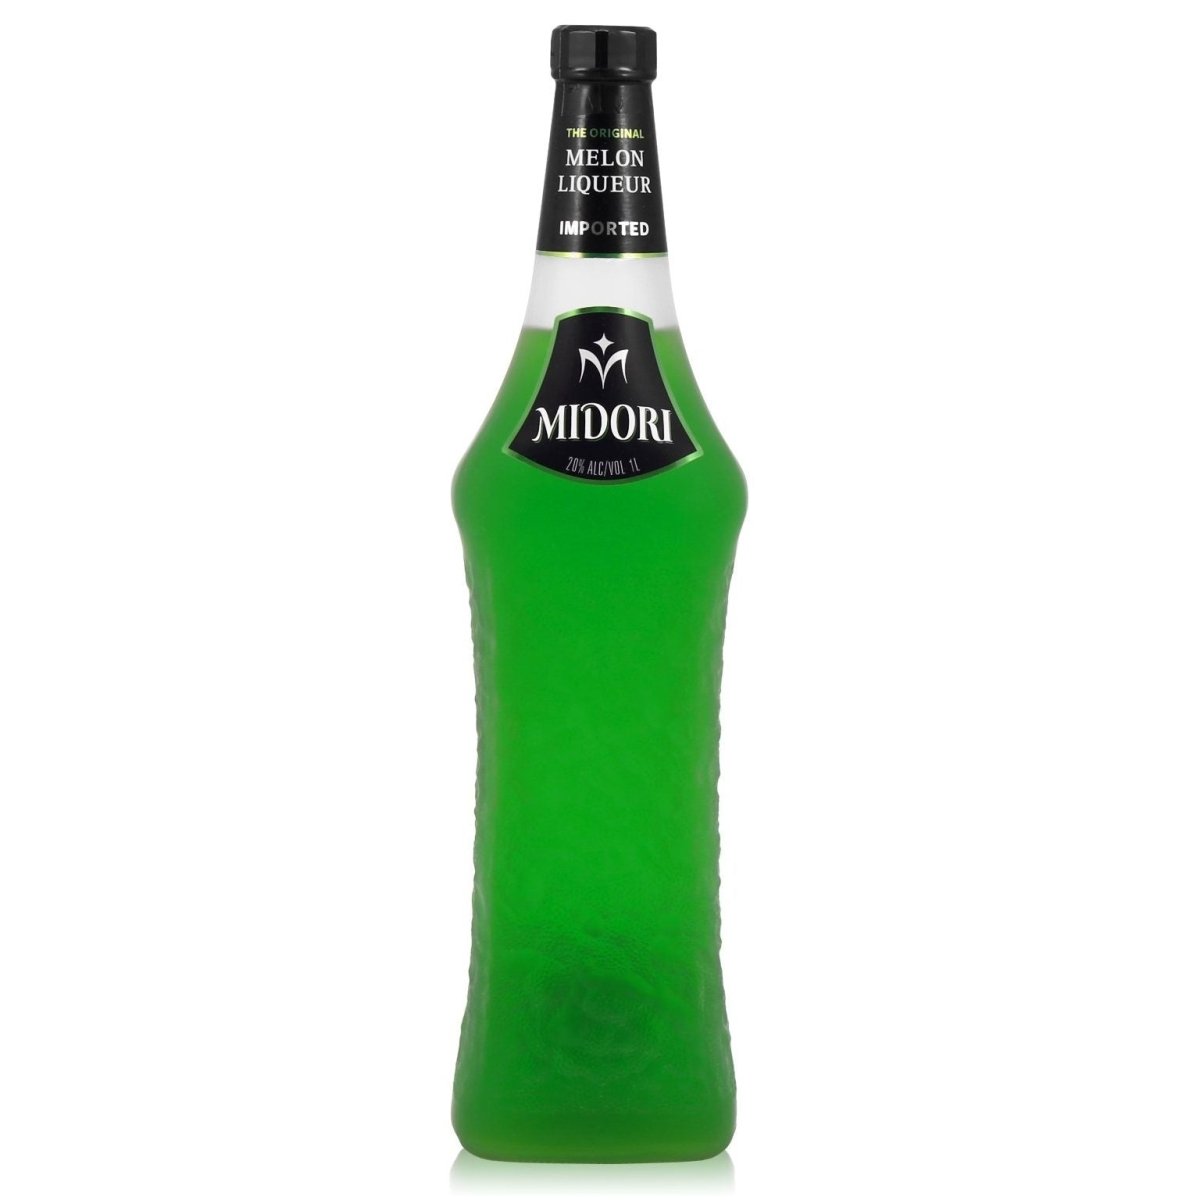 Midori Melon Liqueur - Latitude Wine & Liquor Merchant